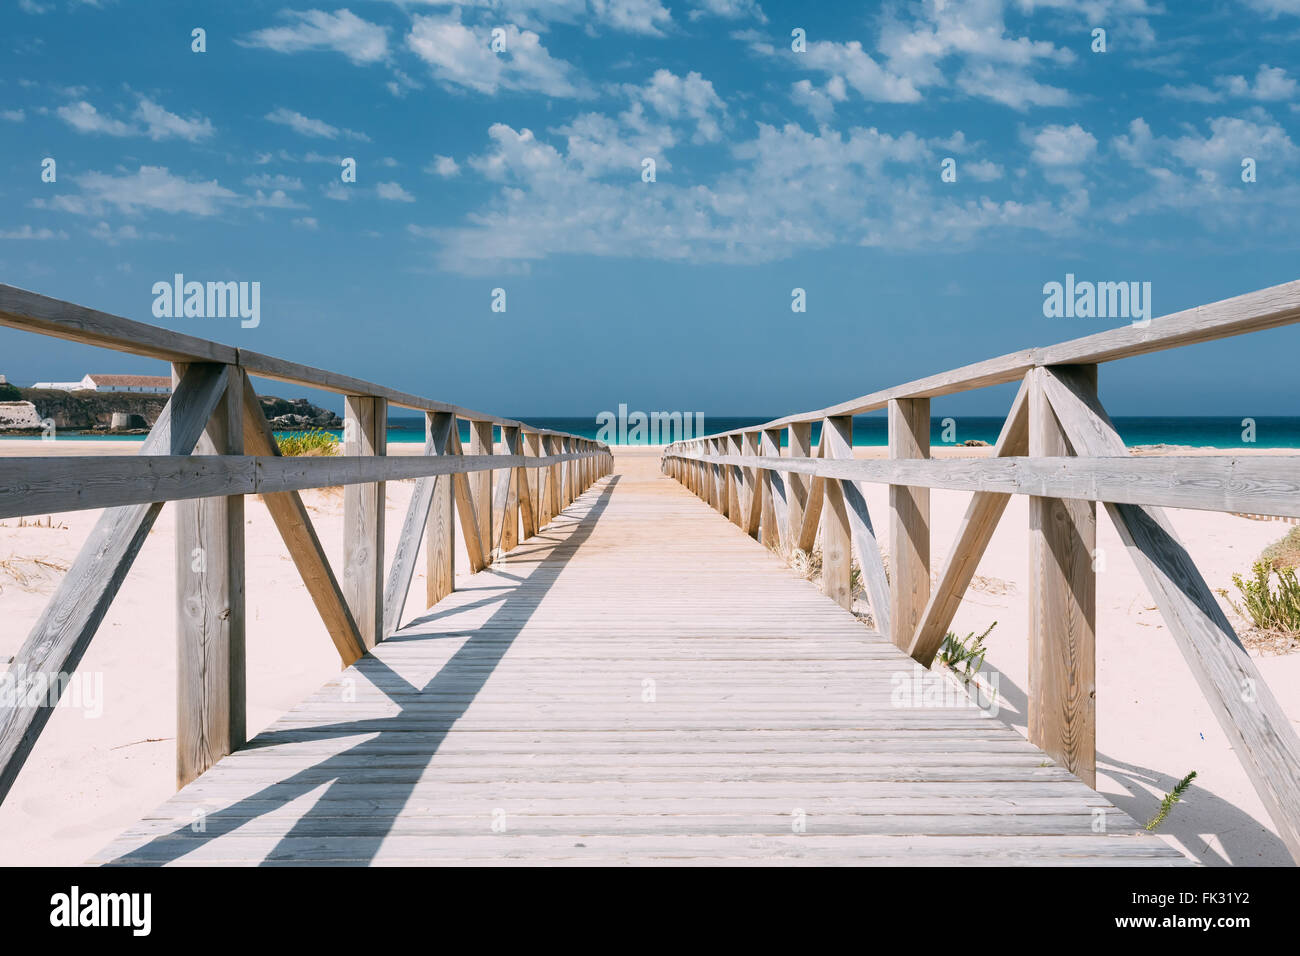 Holzweg, Treppen am Strand Dünen In Tarifa, Andalusien, Spanien. Urlaub, Ferien, Reisen auf dem Meer Hintergrund. Stockfoto